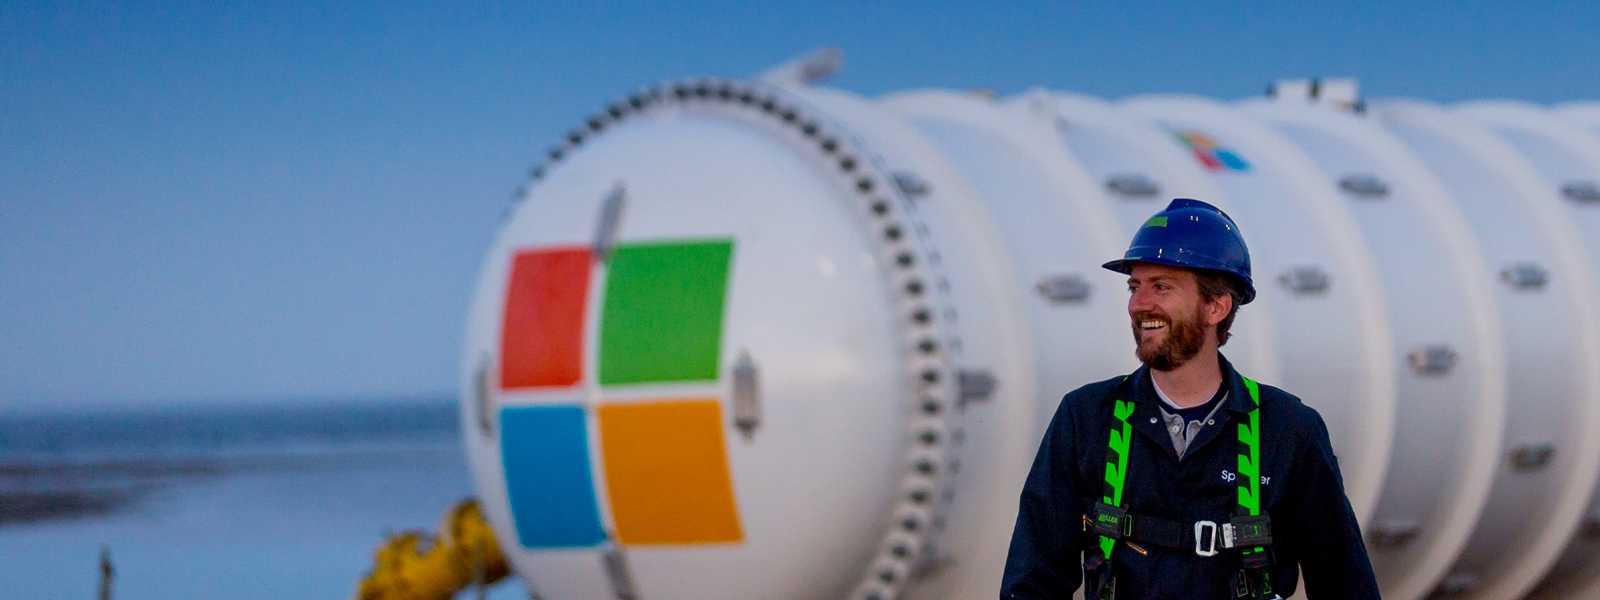 Uśmiechnięty pracownik Microsoft idący obok zbiornika gazu z logo Microsoft